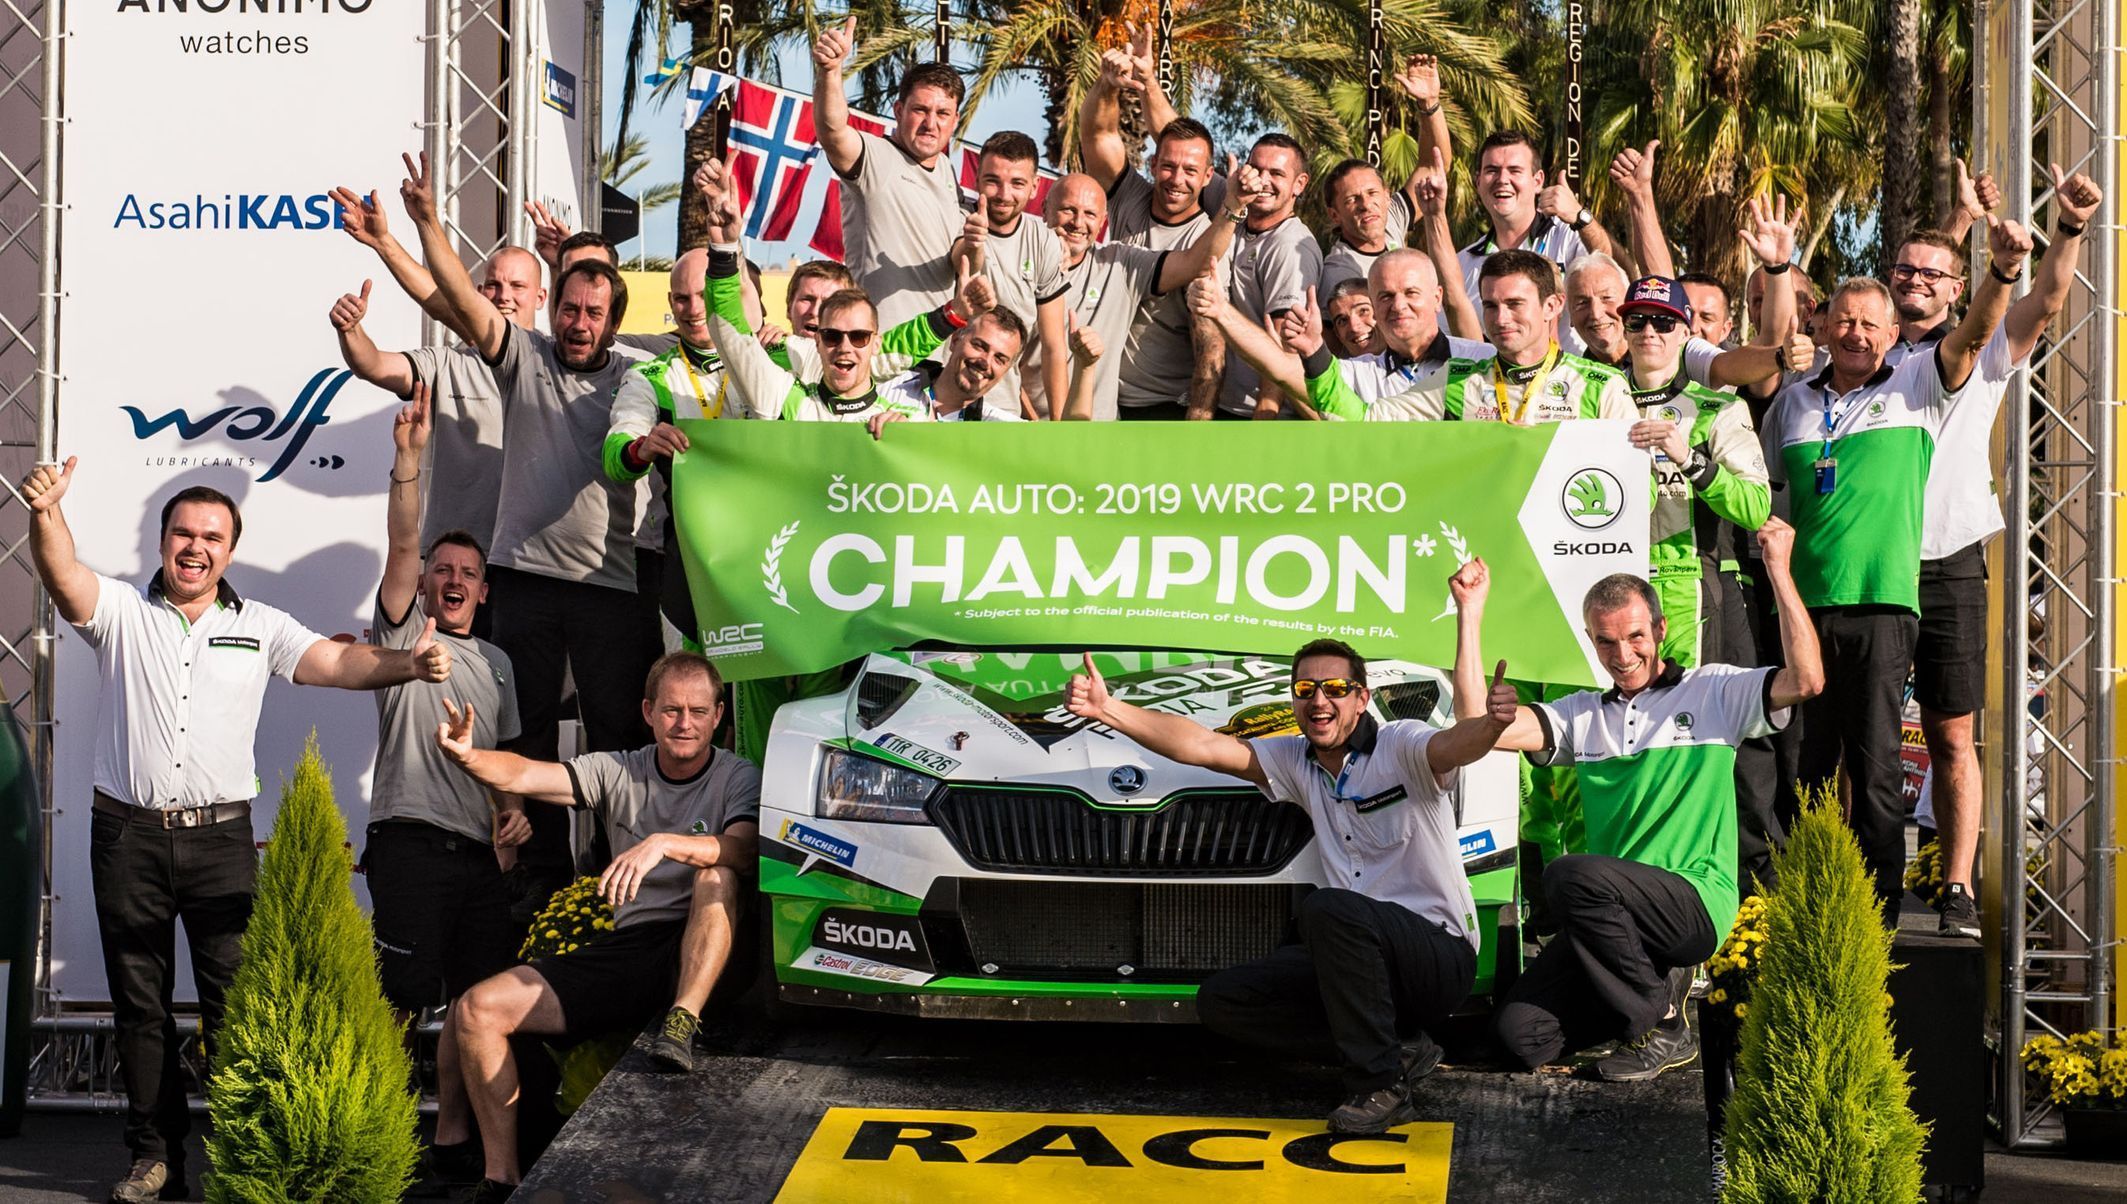 Tým Škoda Motorsport slaví titul v kategorii WRC2 Pro ve světovém šampionátu v rallye 2019